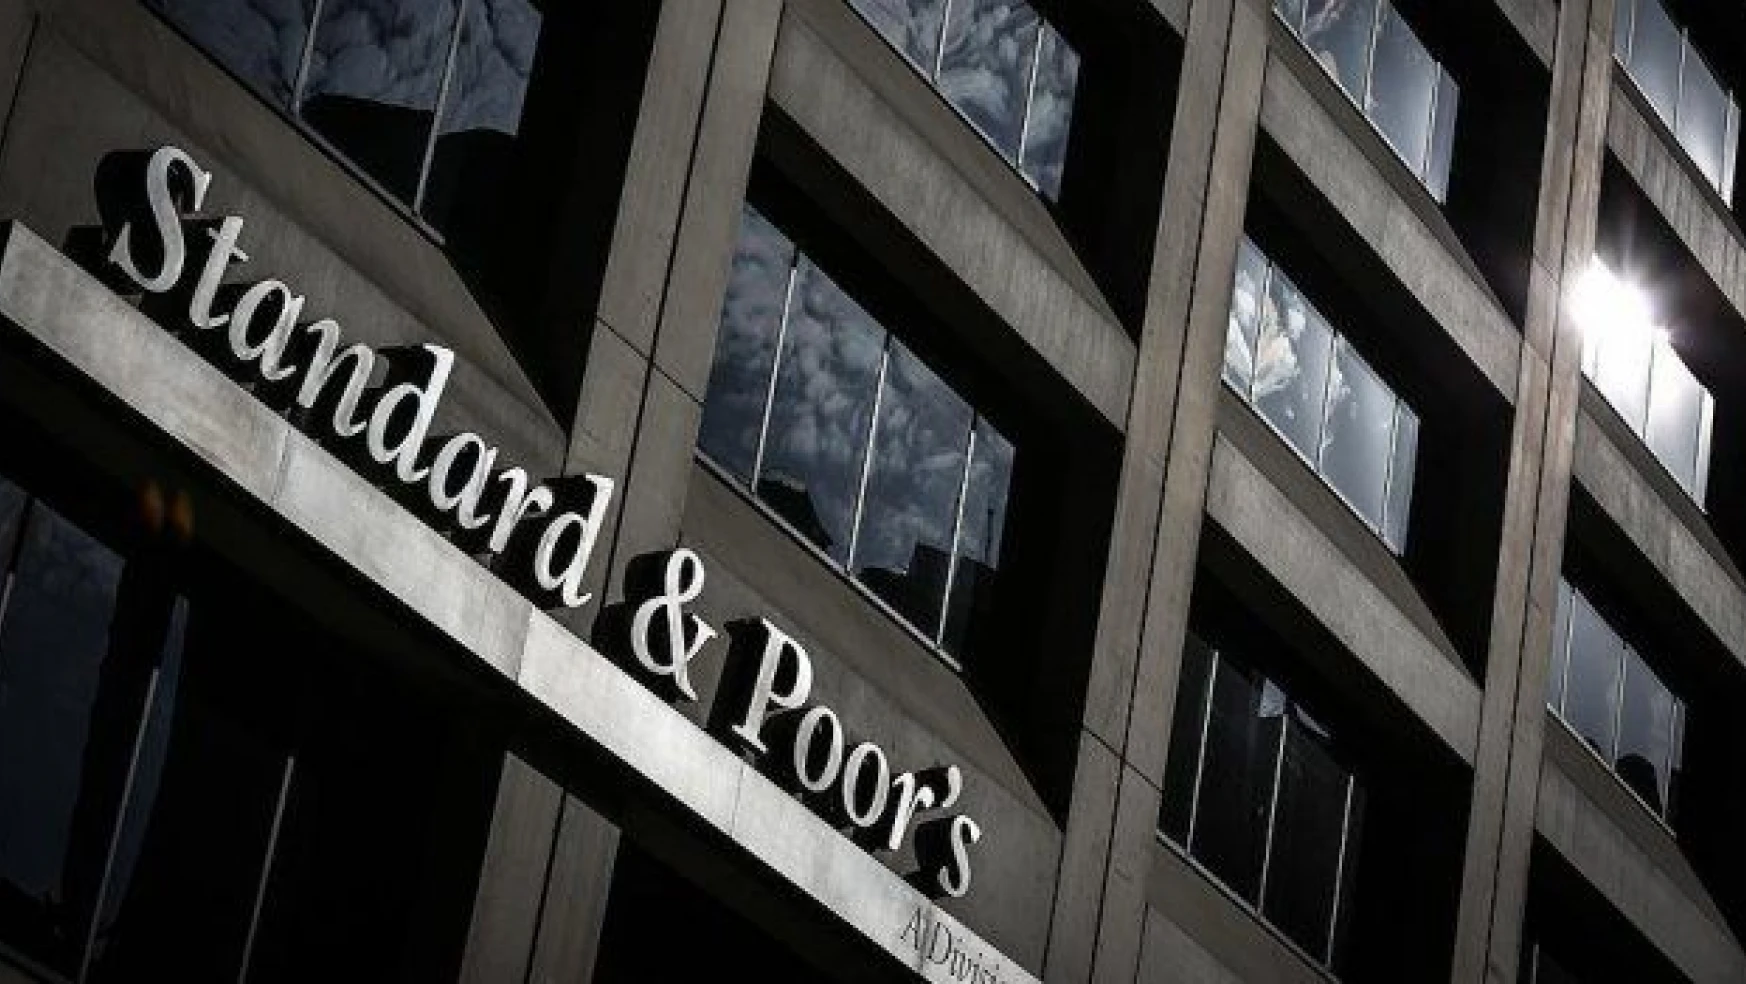 Standard & Poor's Türkiye'nin kredi notunu teyit etti